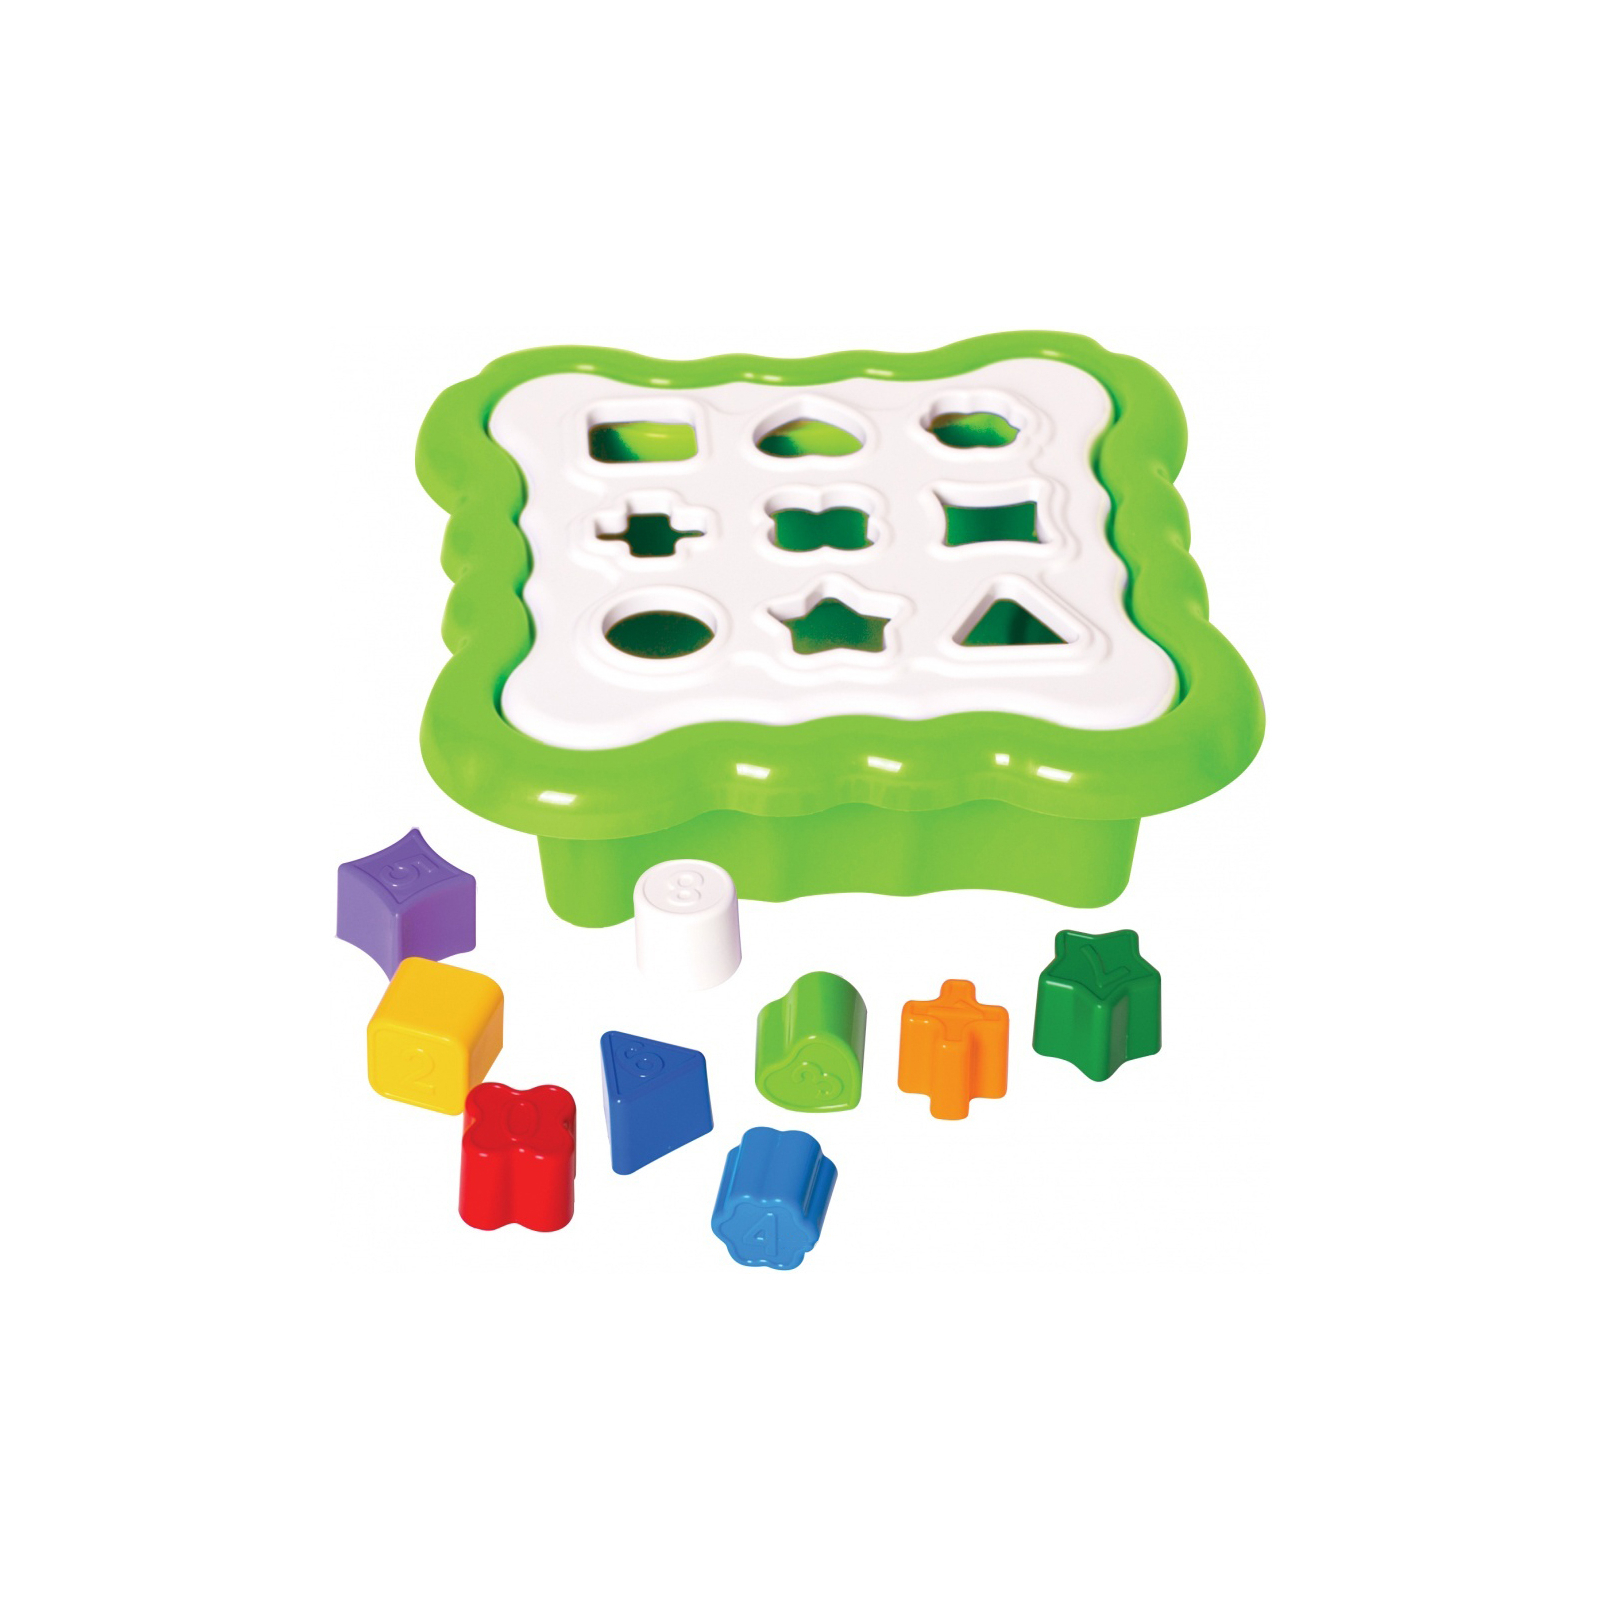 Развивающая игрушка Tigres сортер Умные фигурки 10 элементов (св.зеленый) (39521)